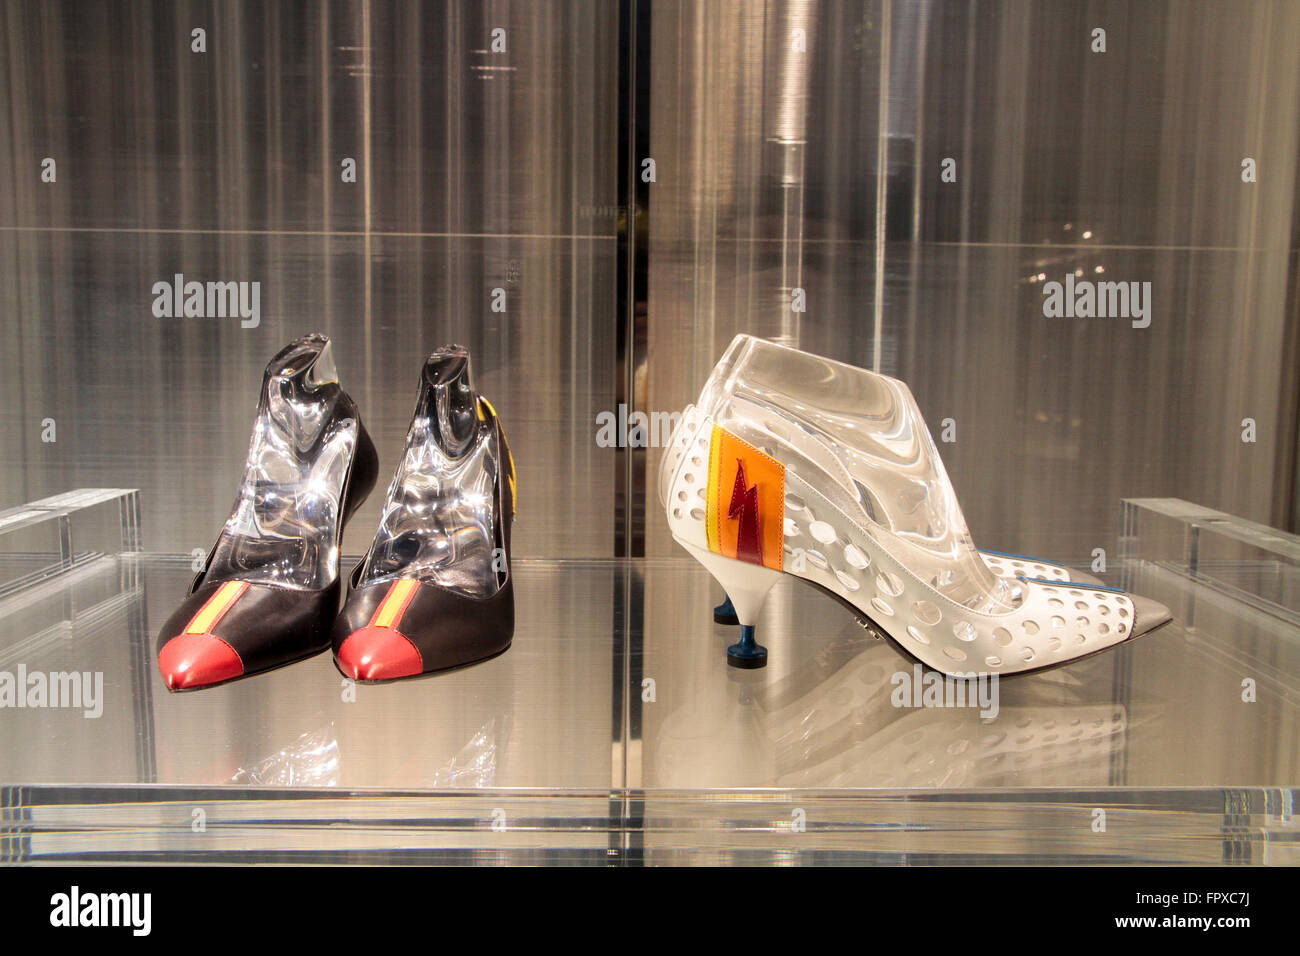 Prada scarpe finestra marca negozio in via Condotti Roma Italia, shopping  moda di lusso made in Italy Foto stock - Alamy